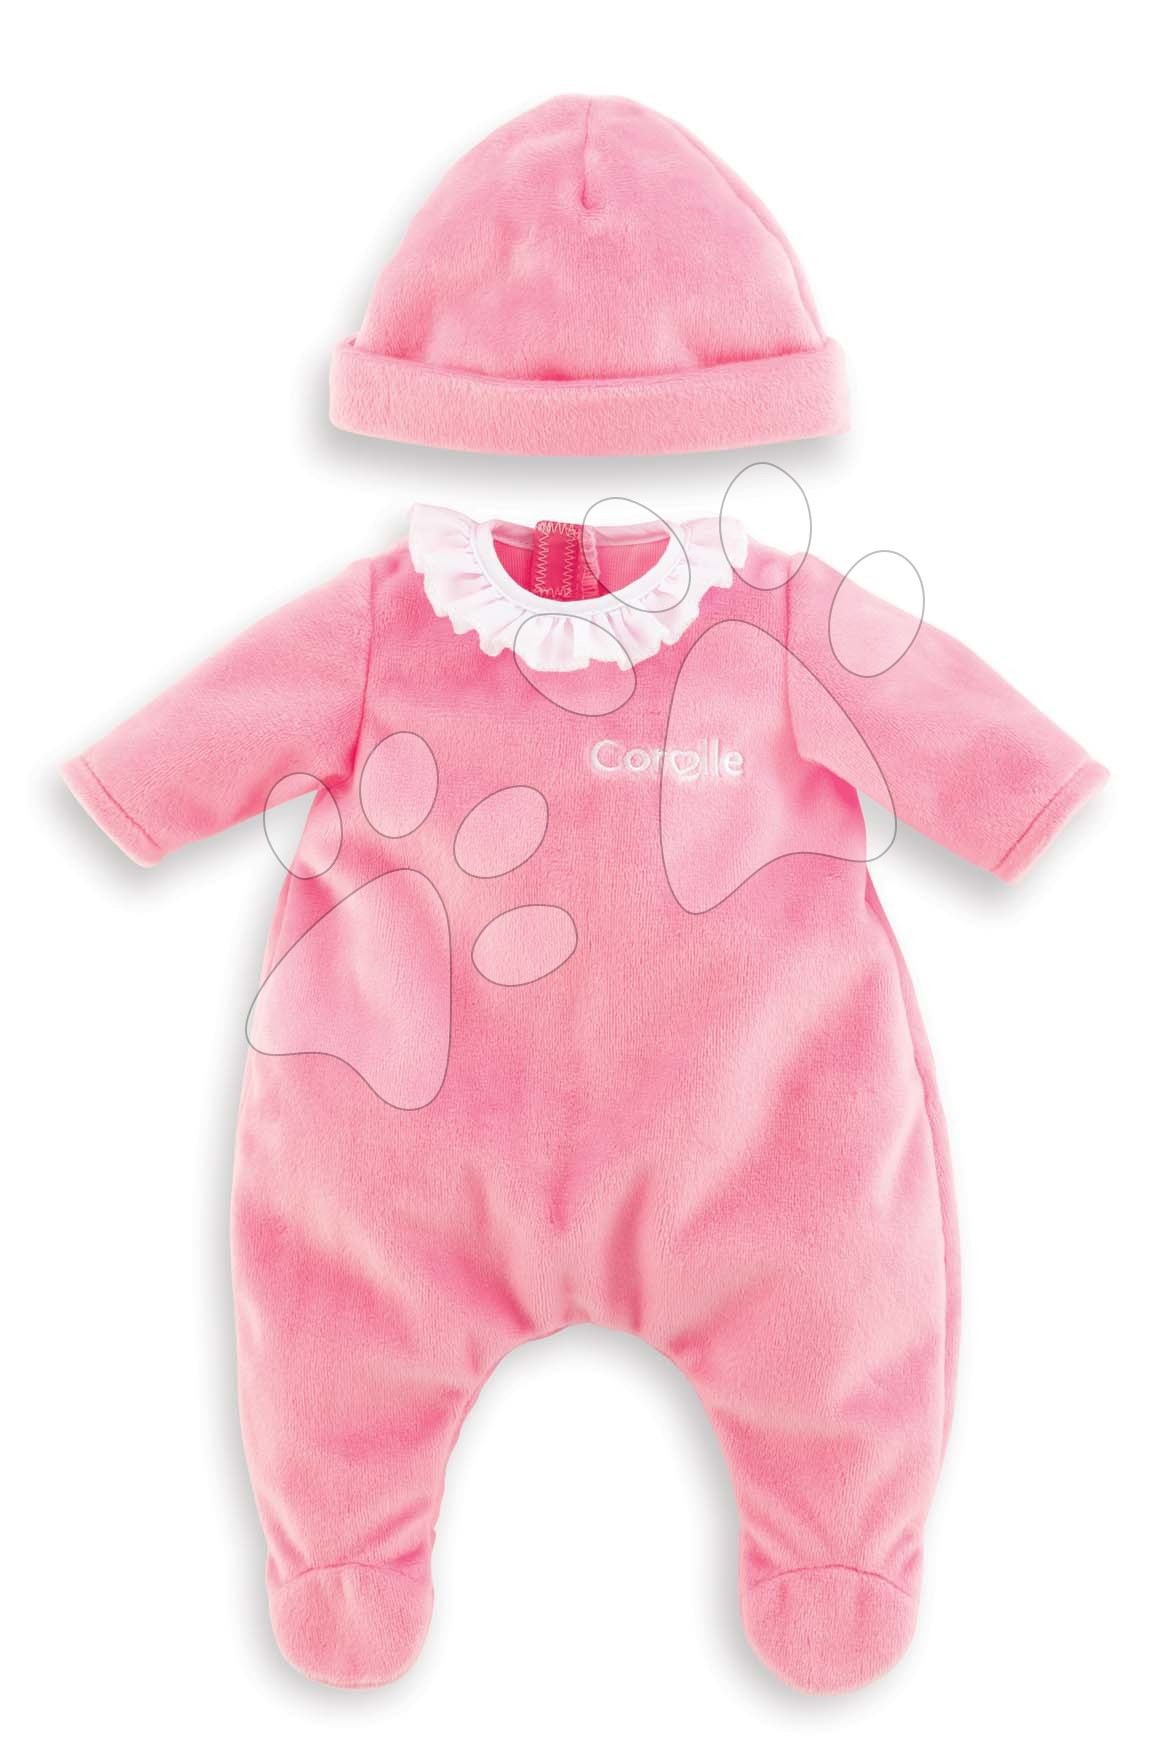 E-shop Oblečenie Pajamas Pink & Hat Mon Premier Poupon Corolle pre 30 cm bábiku od 18 mes